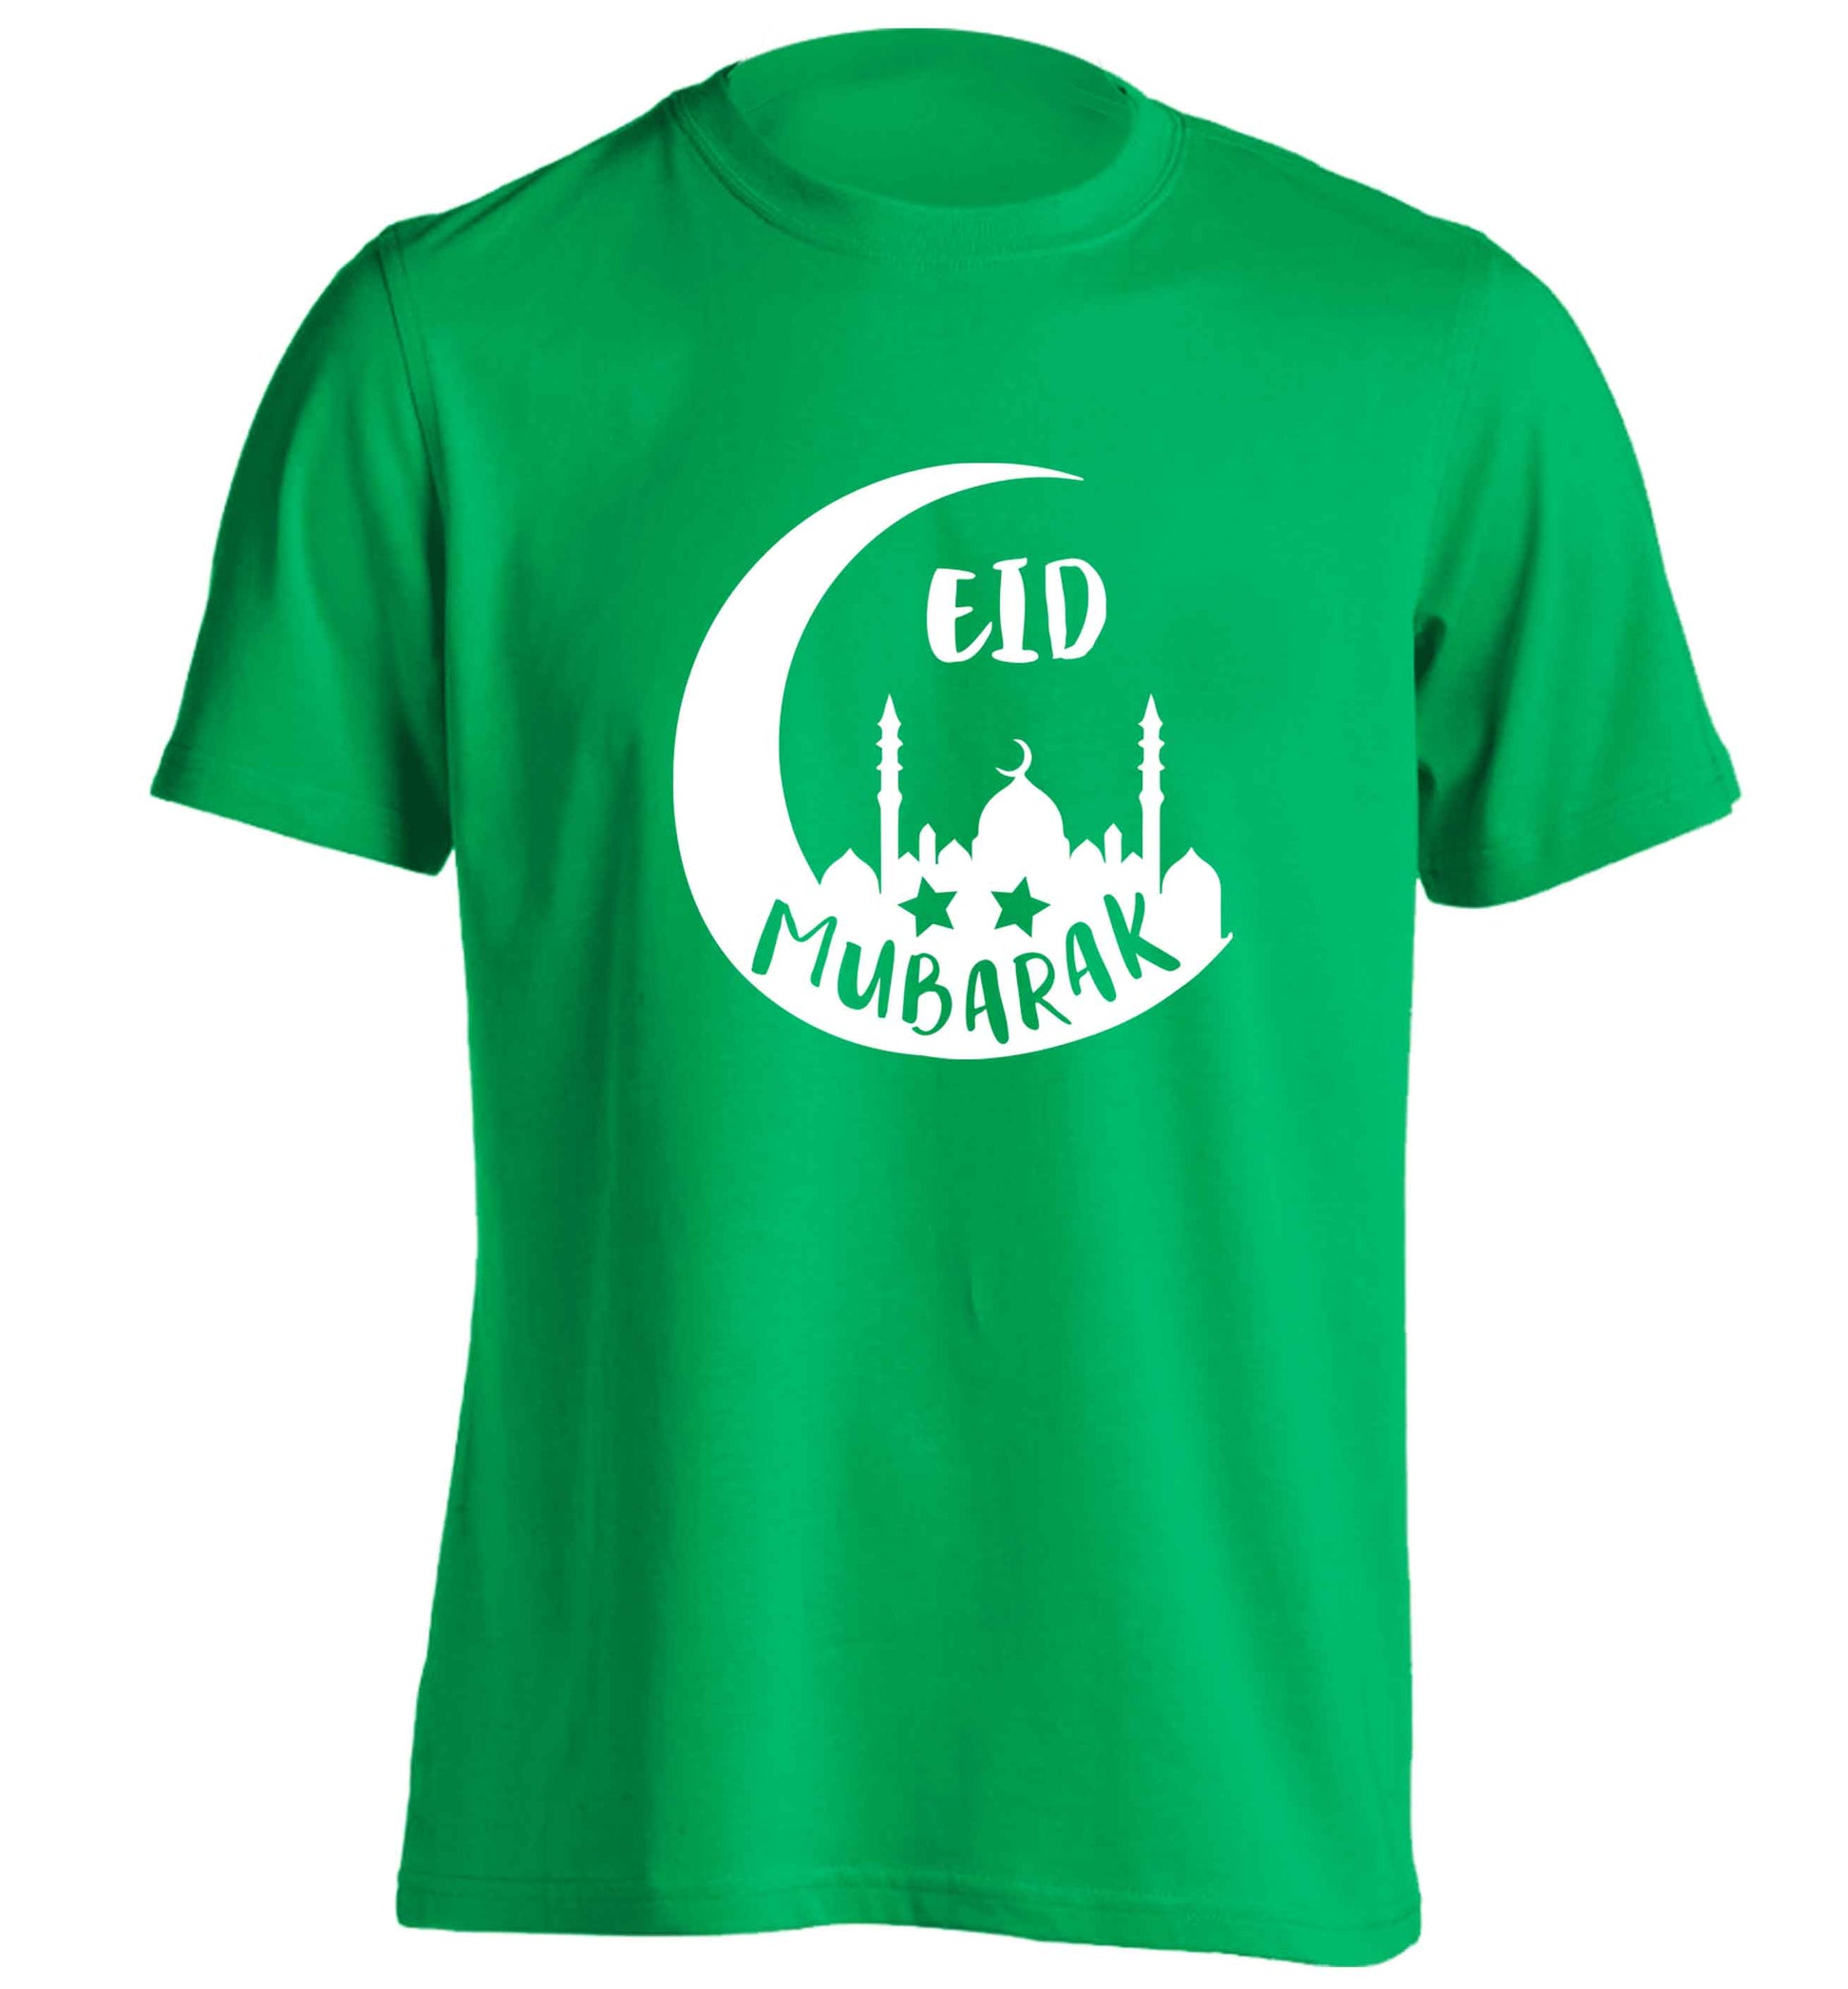 Eid mubarak adults unisex green Tshirt 2XL